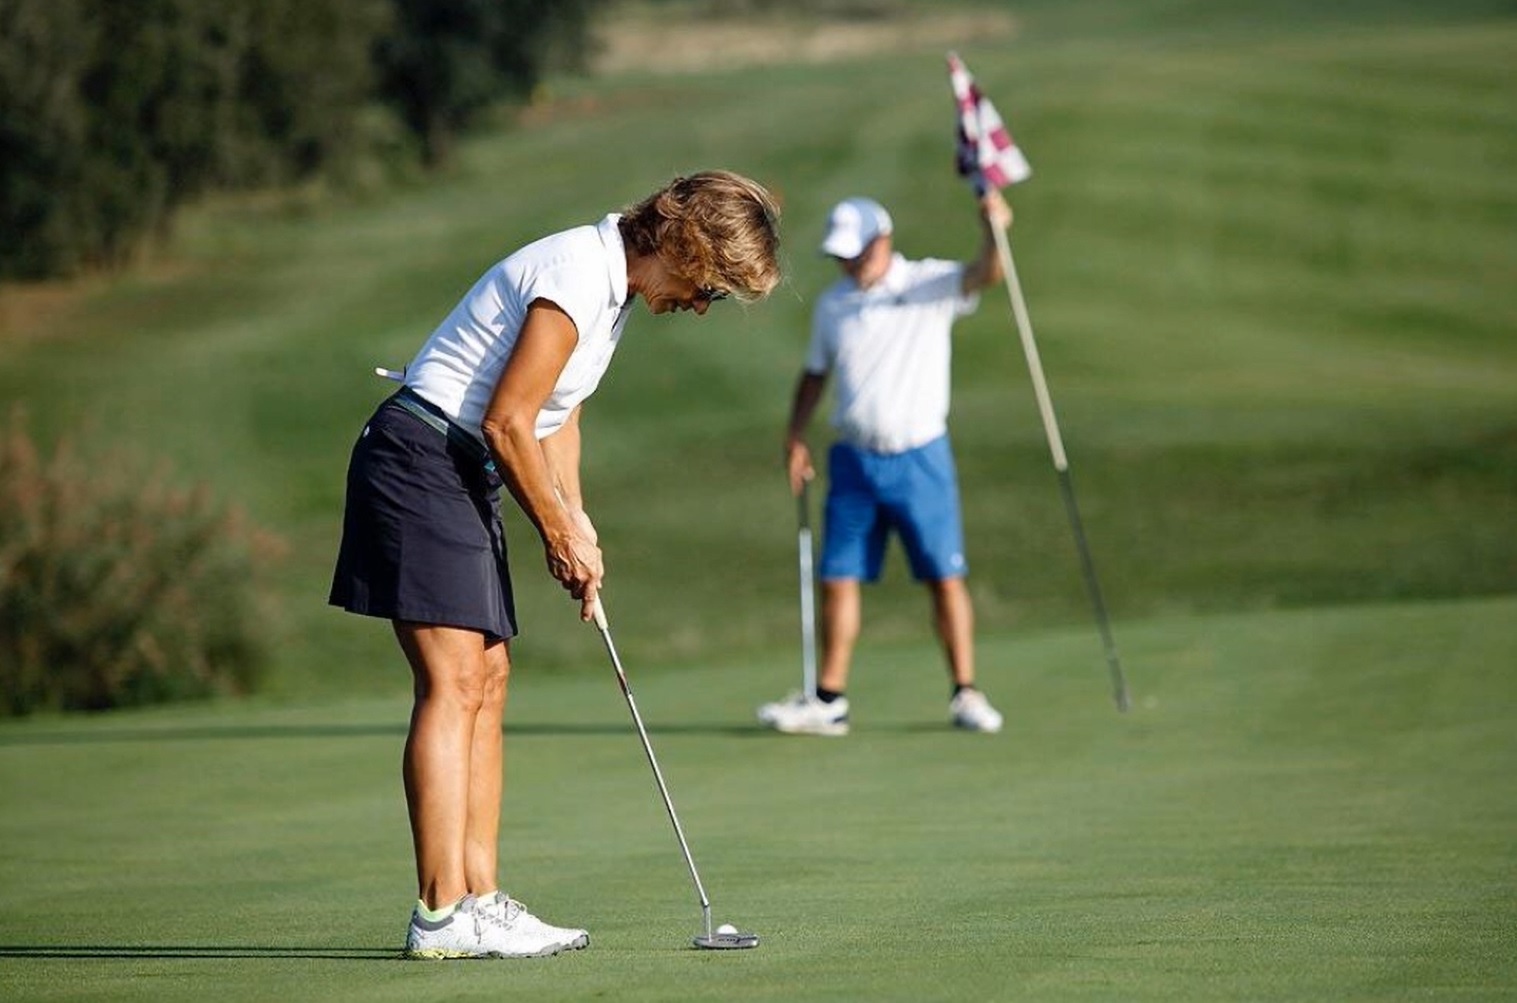 El VIII torneig benèfic de golf ‘Toni Manchón JR’ recapta 14.000€